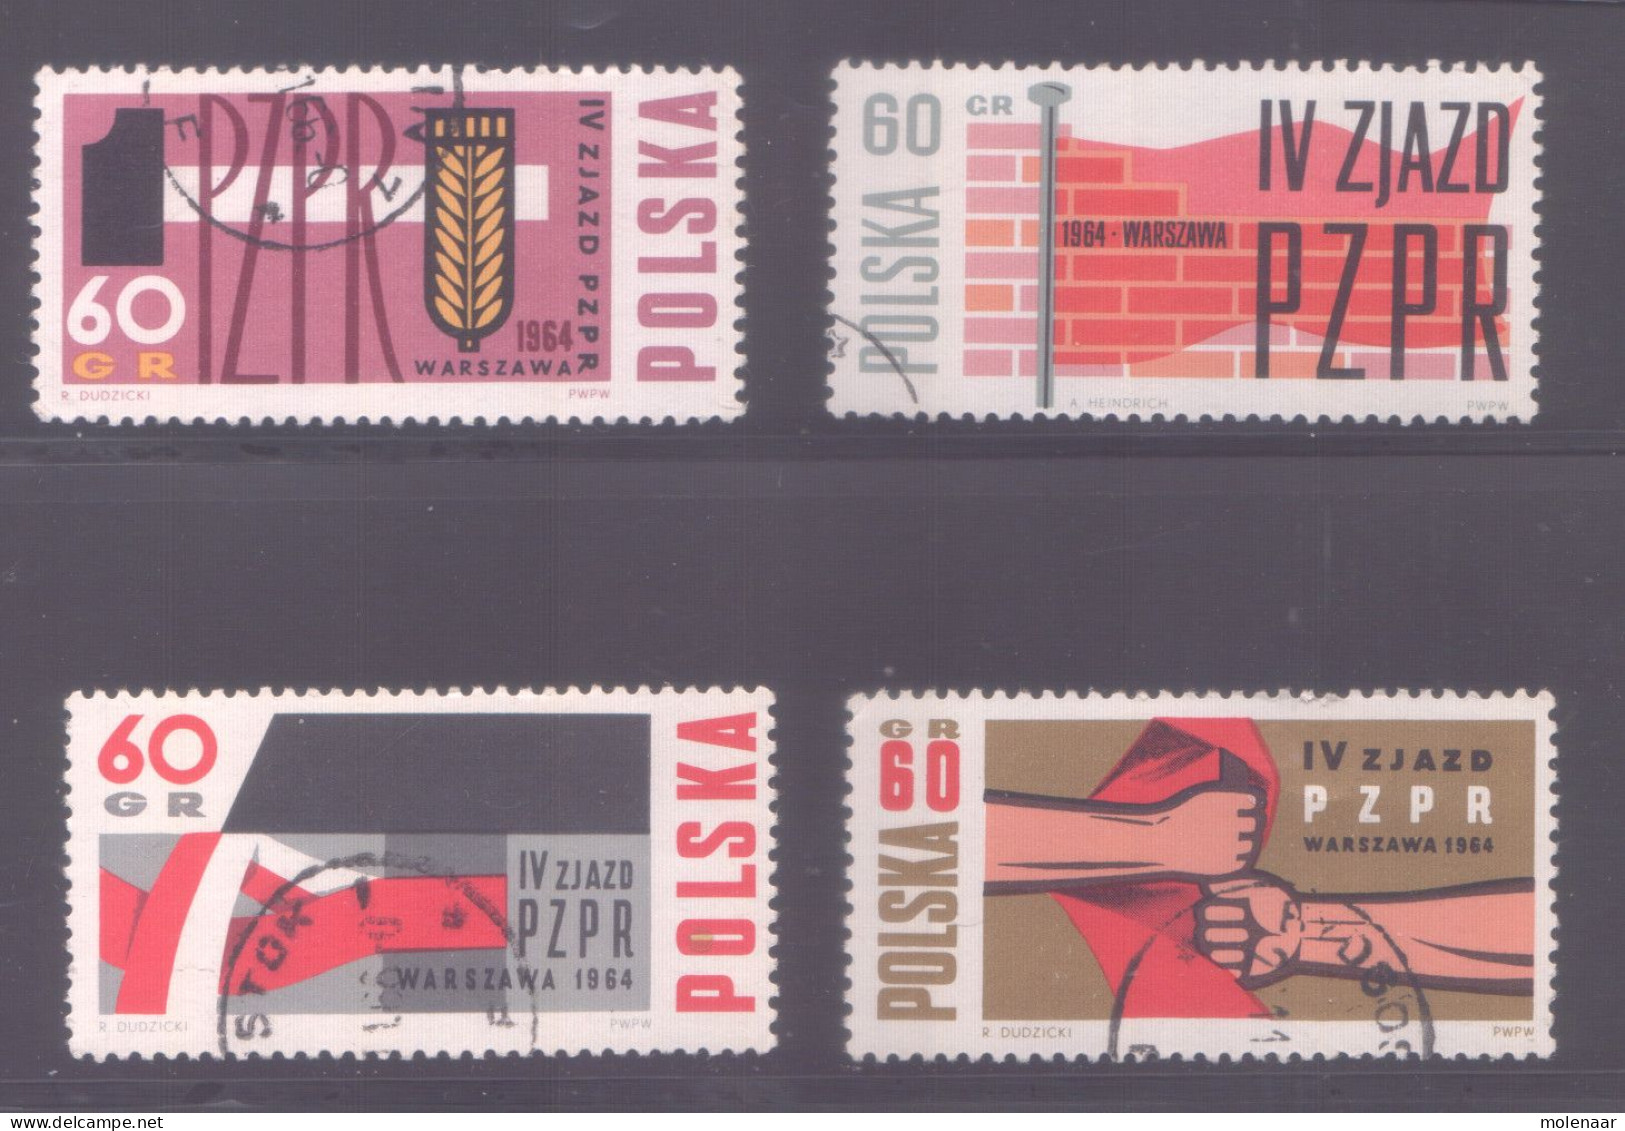 Postzegels > Europa > Polen > 1944-.... Republiek > 1971-80 > Gebruikt No.  1492-1495 (11960) - Covers & Documents